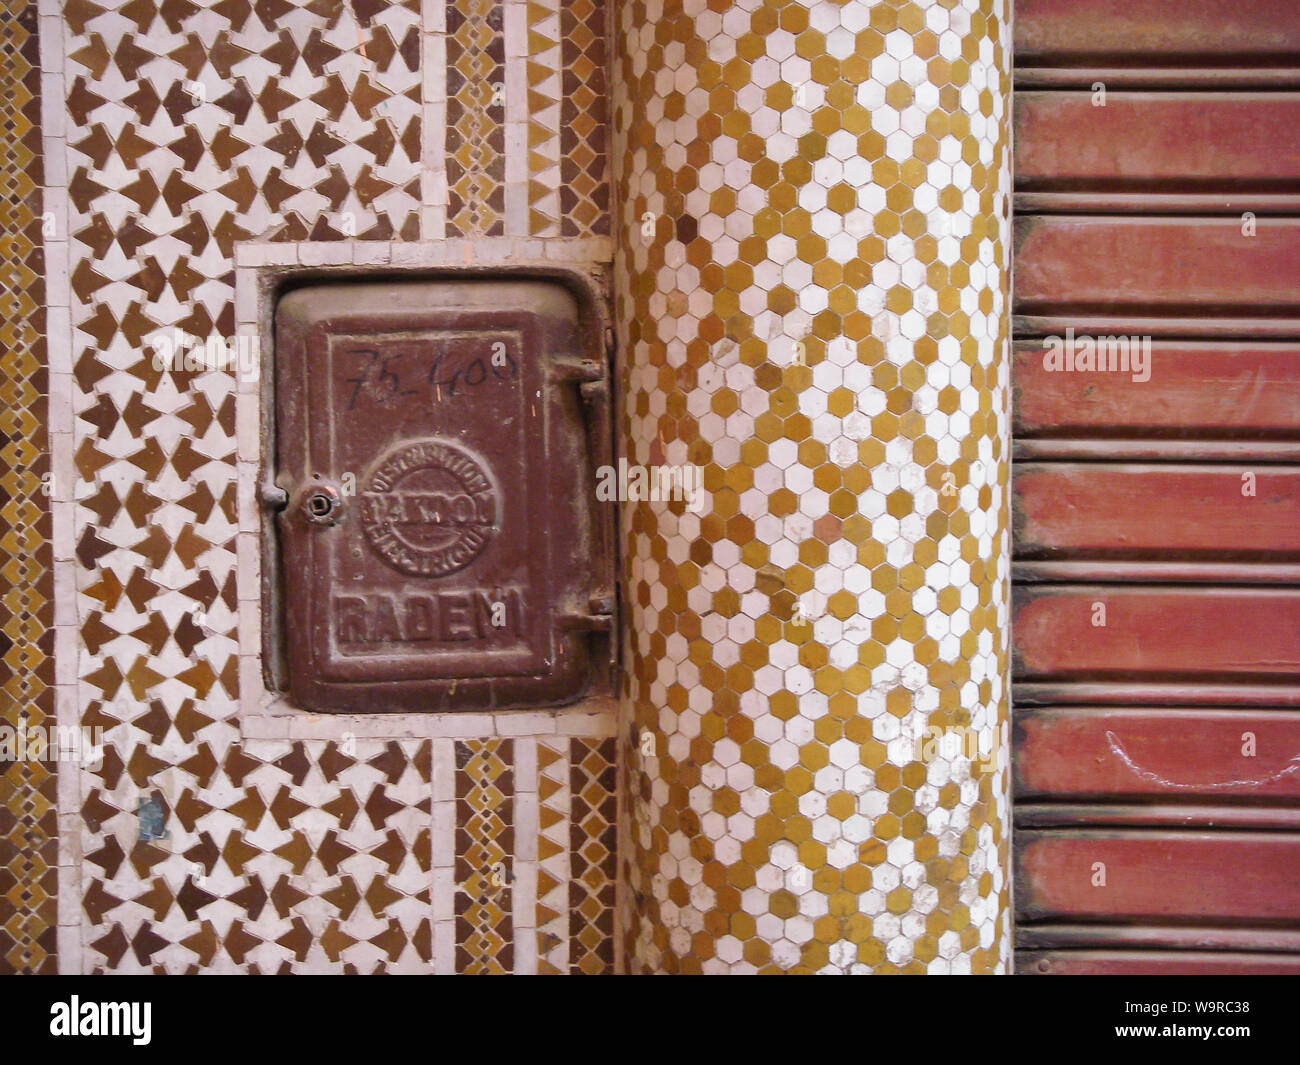 Marrakech Maroc_Aprile 02,2010: misuratore di energia elettrica su una parete con variopinte piastrelle Arabo Foto Stock